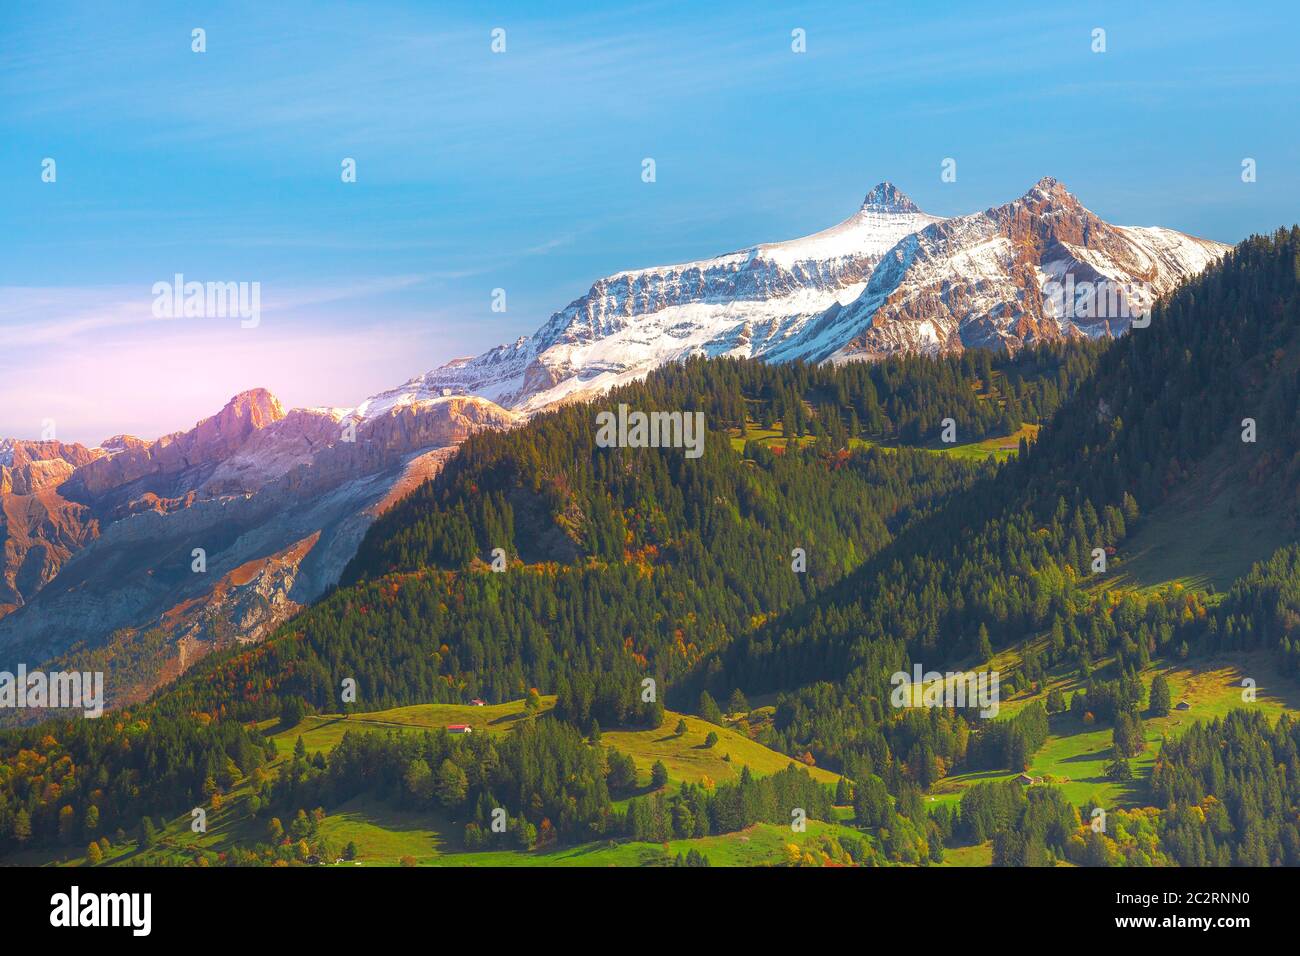 La Suisse, Jungfraujoch, Alpes Suisses paysage d'automne aux couleurs rose et blanc neige montagnes rocheuses, vert et jaune automne arbres au coucher du soleil Banque D'Images